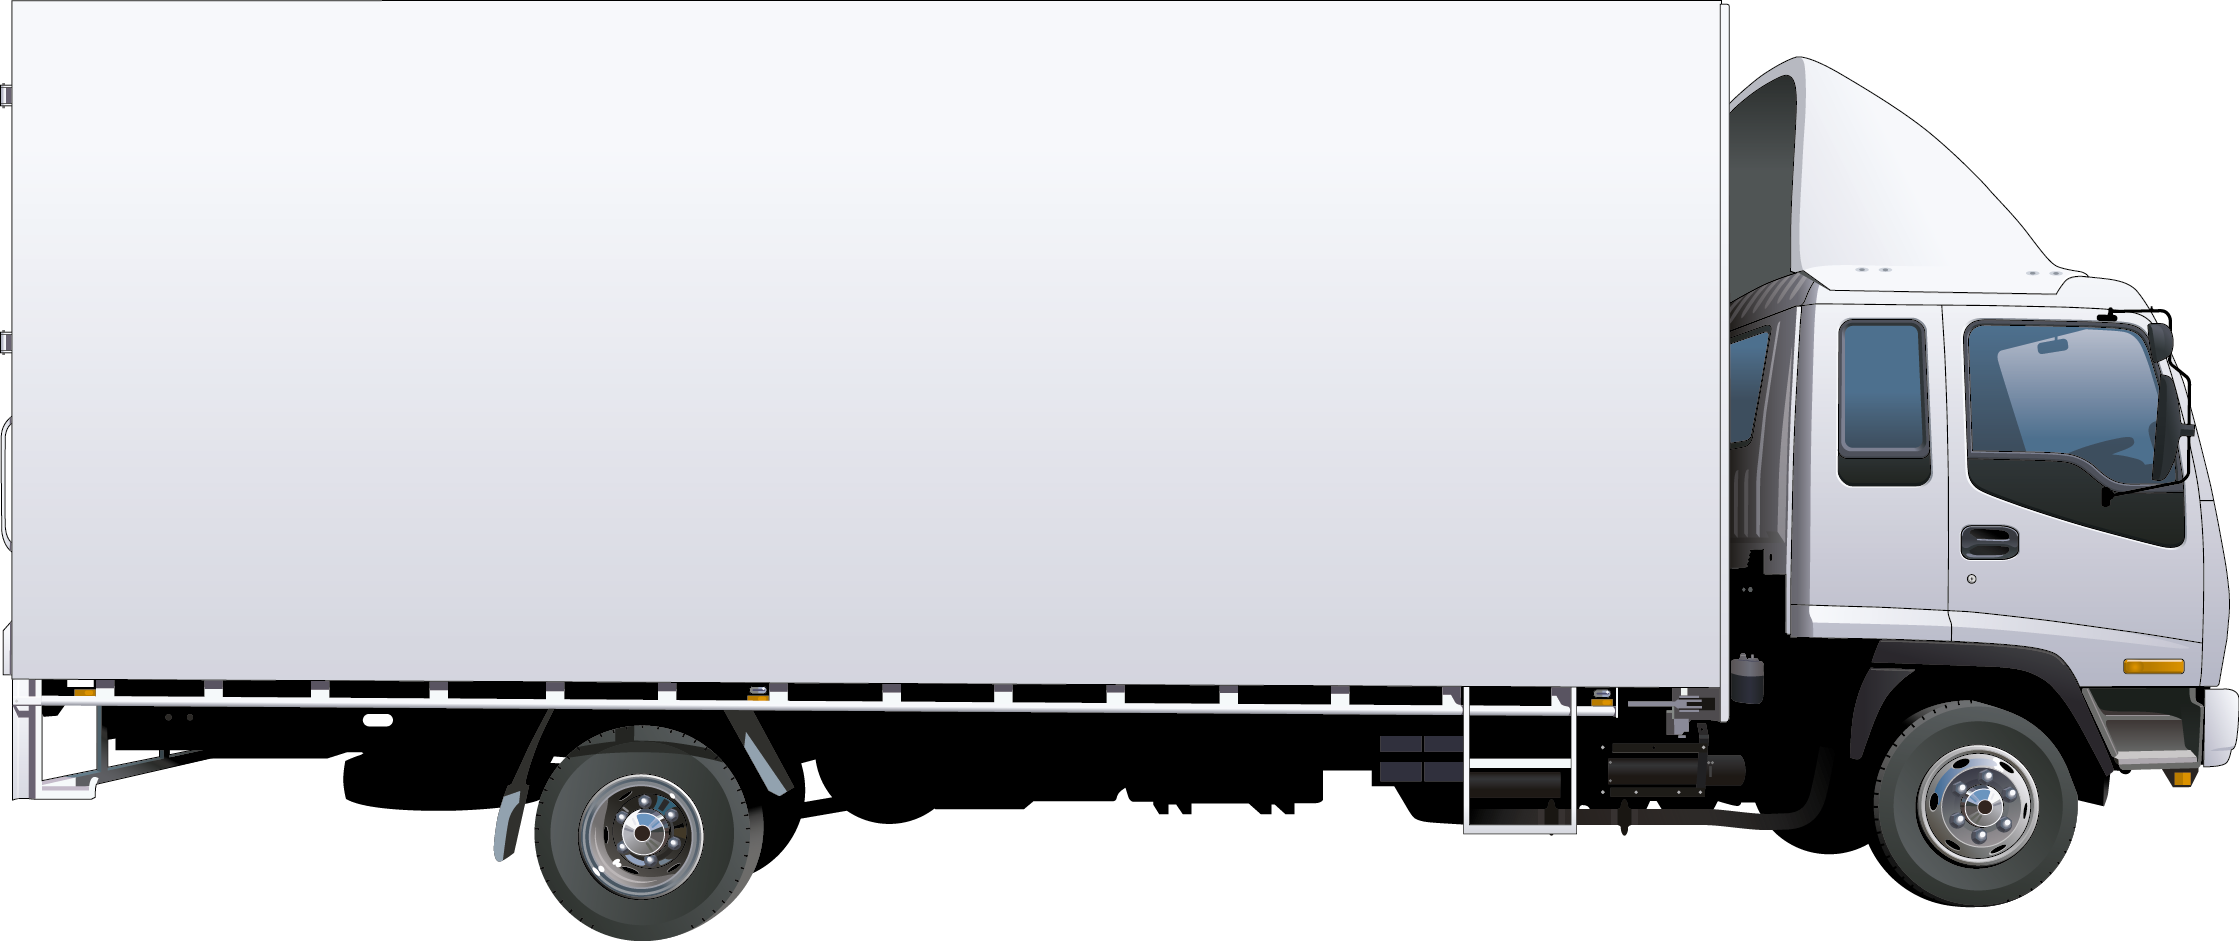 Прозрачный грузовик. Isuzu фургон сбоку 3 тонны. Isuzu фургон сбоку 5 тонн. Ивеко мебельный фургон 3,5 тонны вид сбоку на белом фоне. Исузу тент 3 тонны.